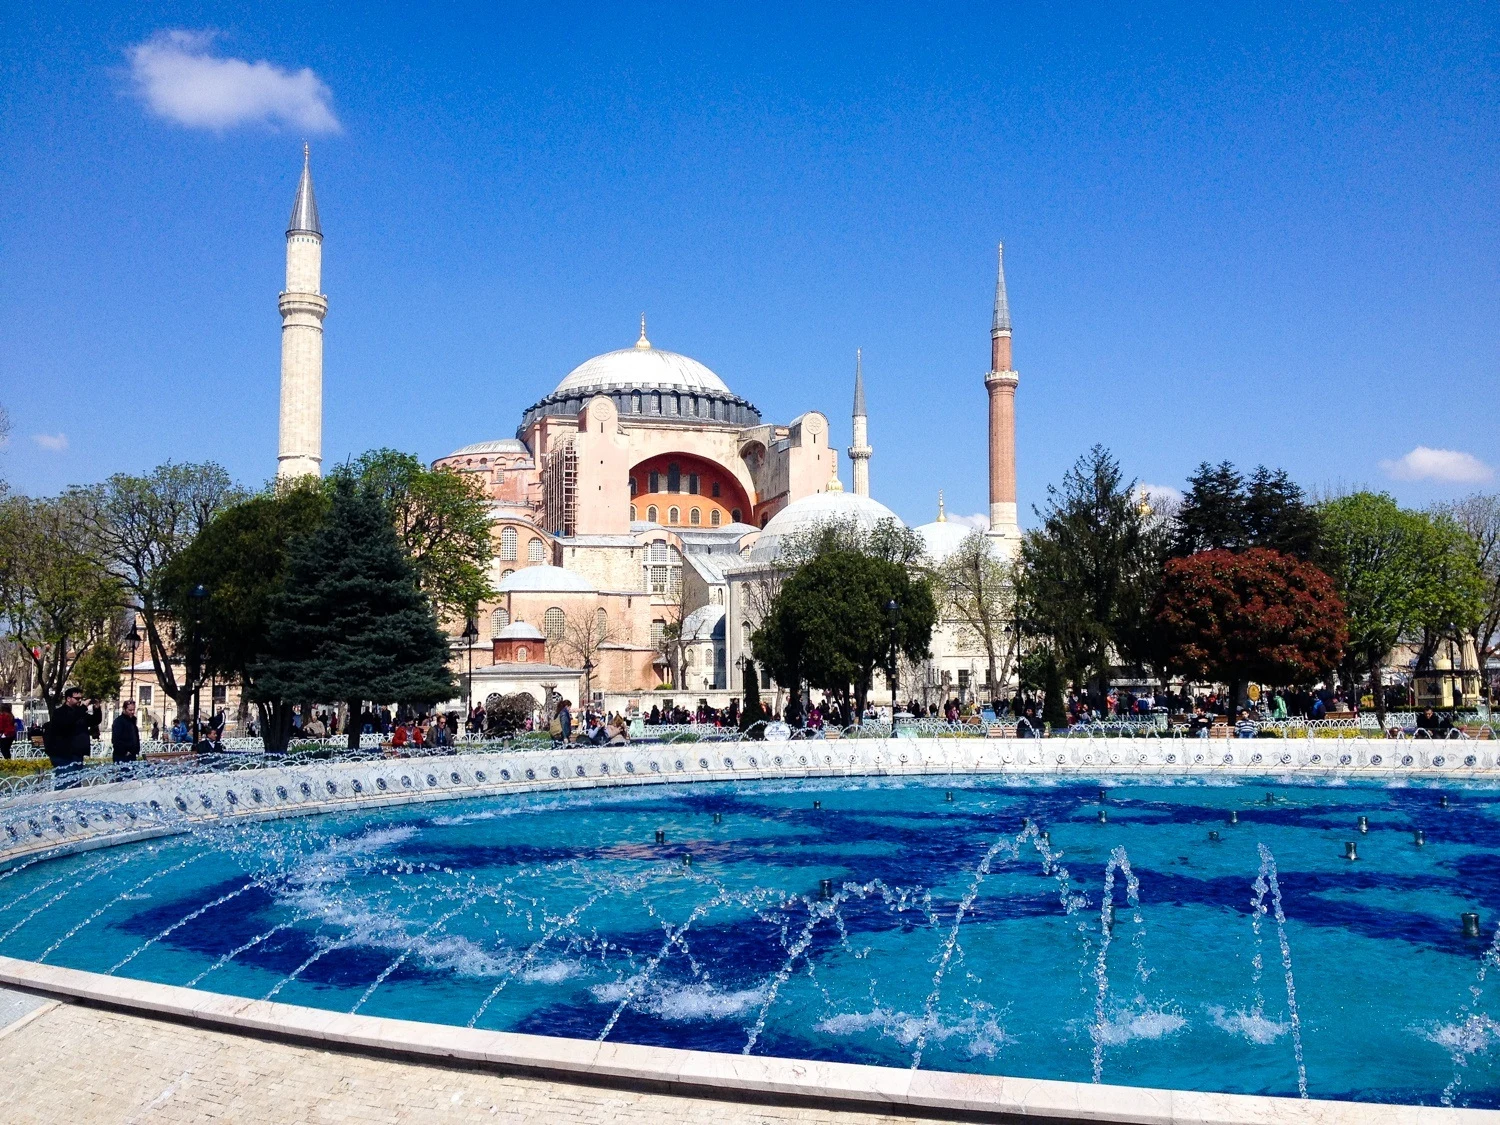 The Hagia Sophia, Istanbul, Turkey, 2015.